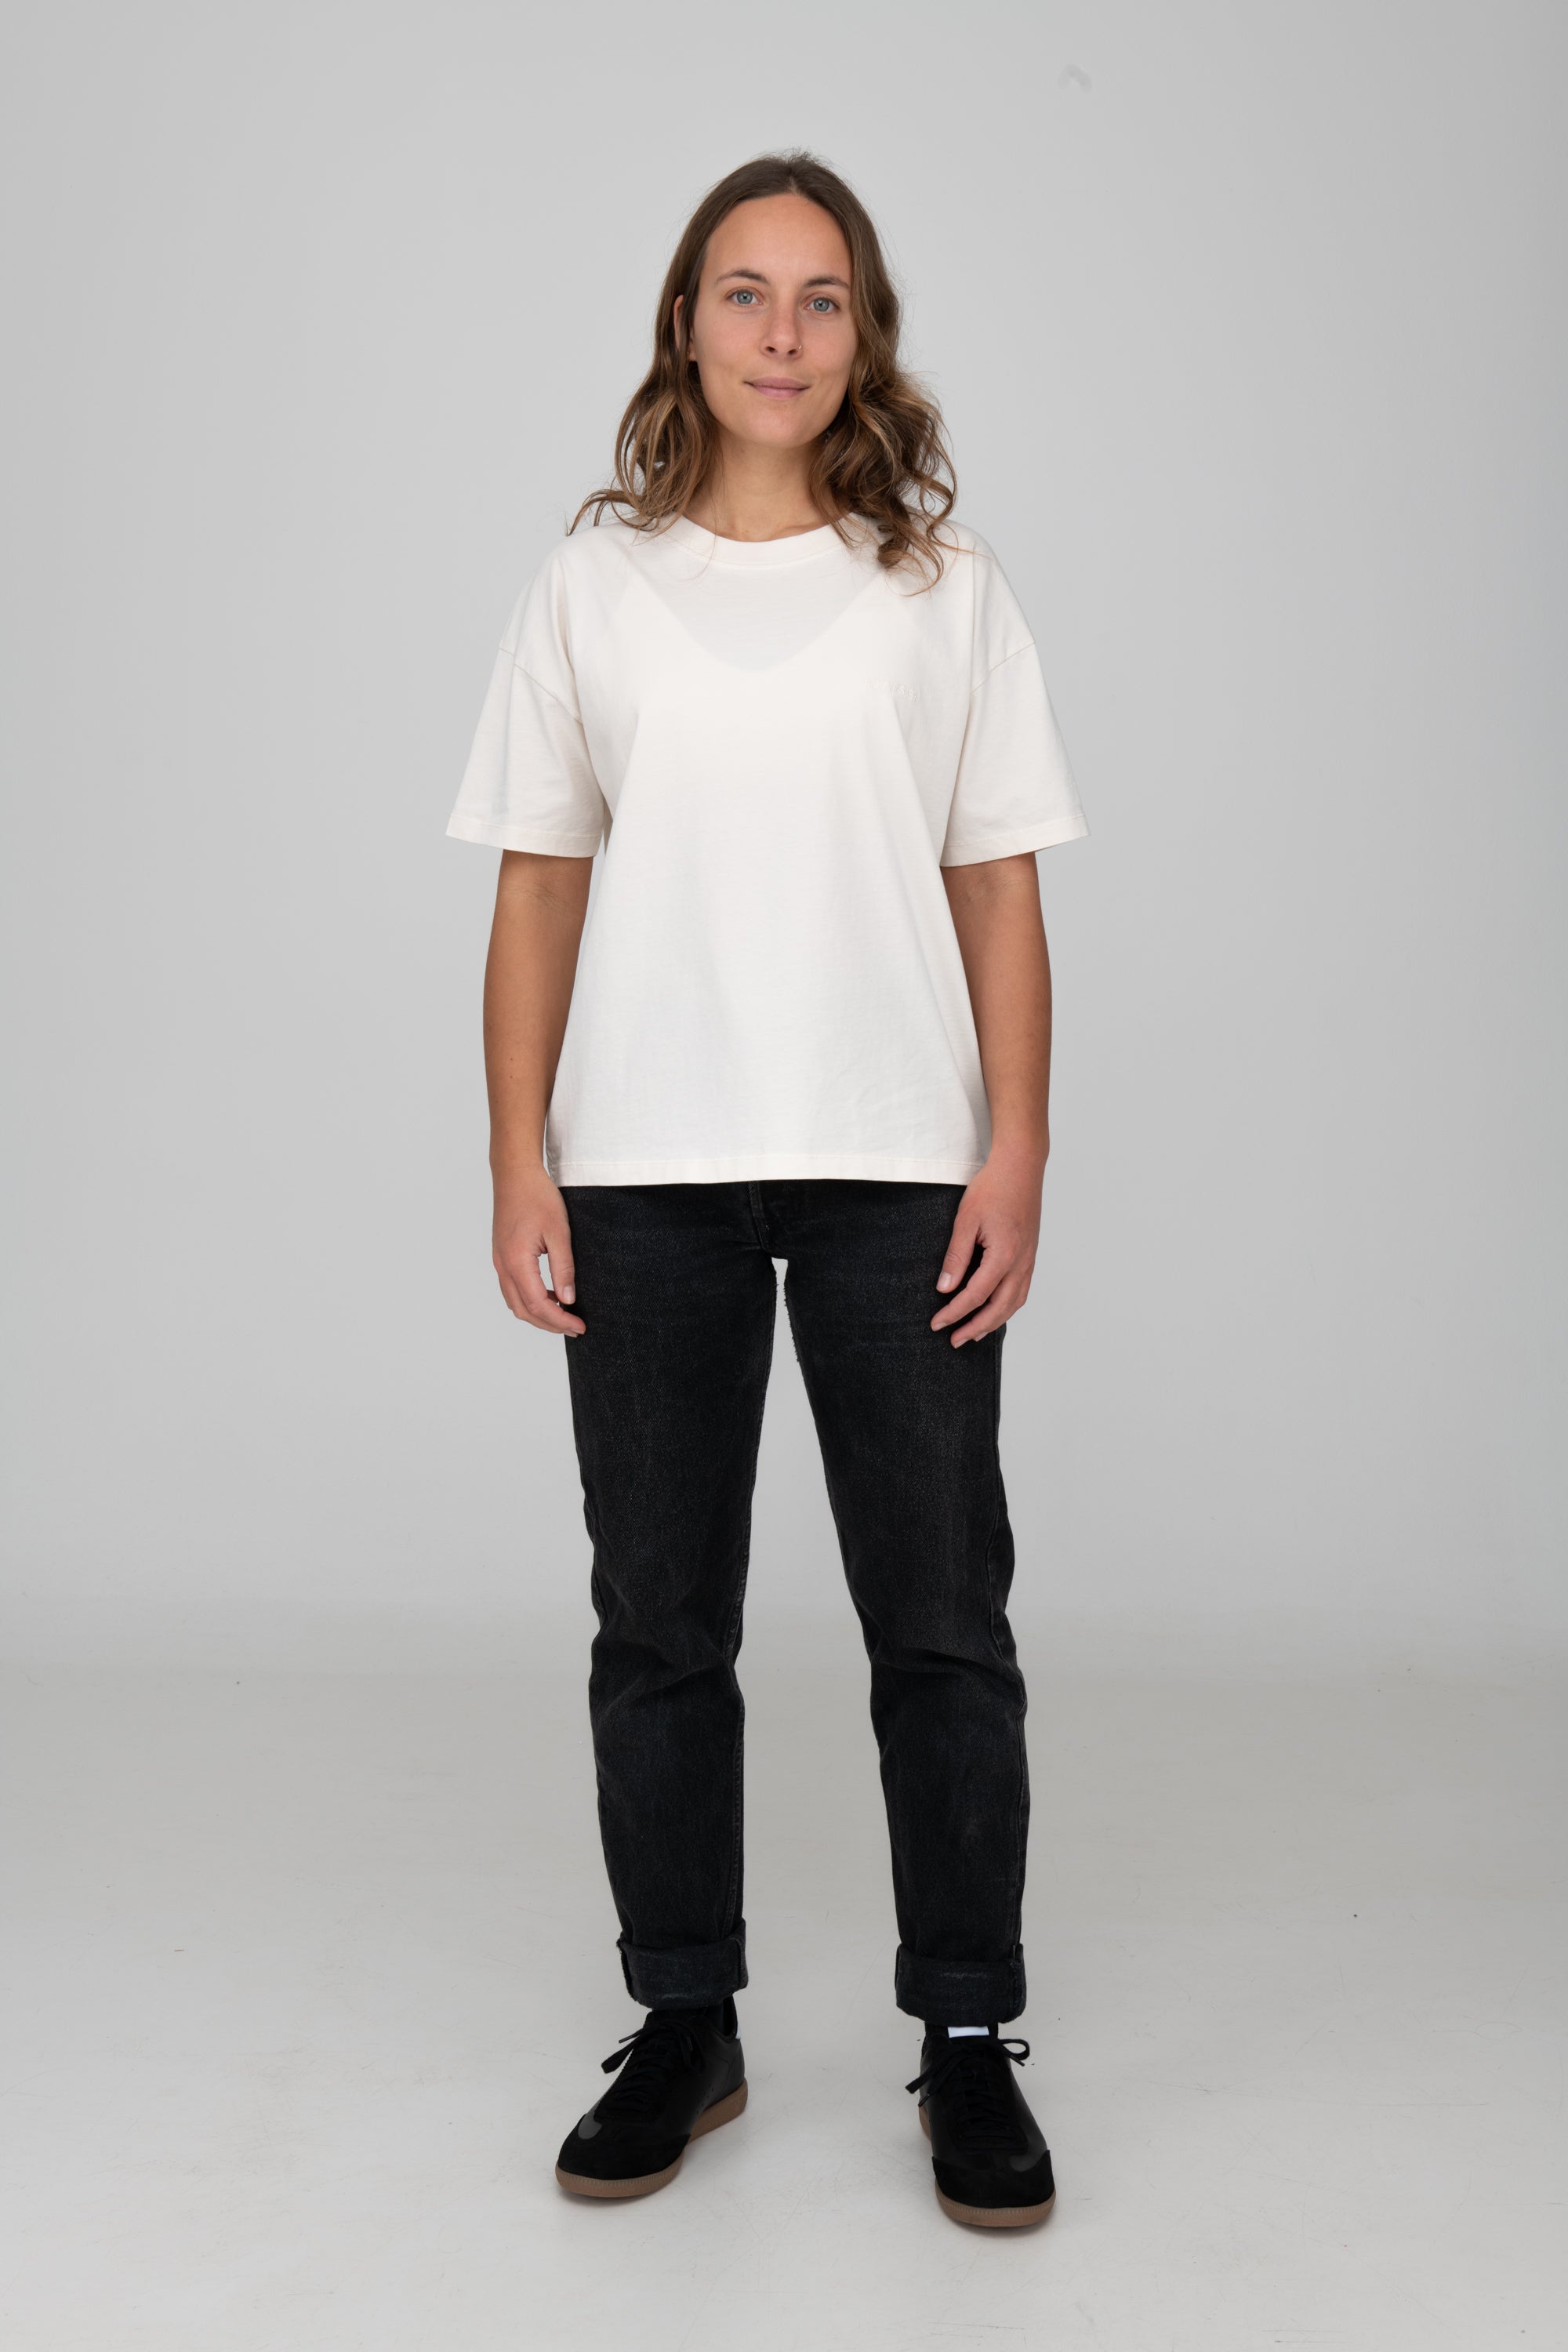 Frau trägt GOTS-zertifiziertes Off-White-farbiges T-Shirt von SALZWASSER